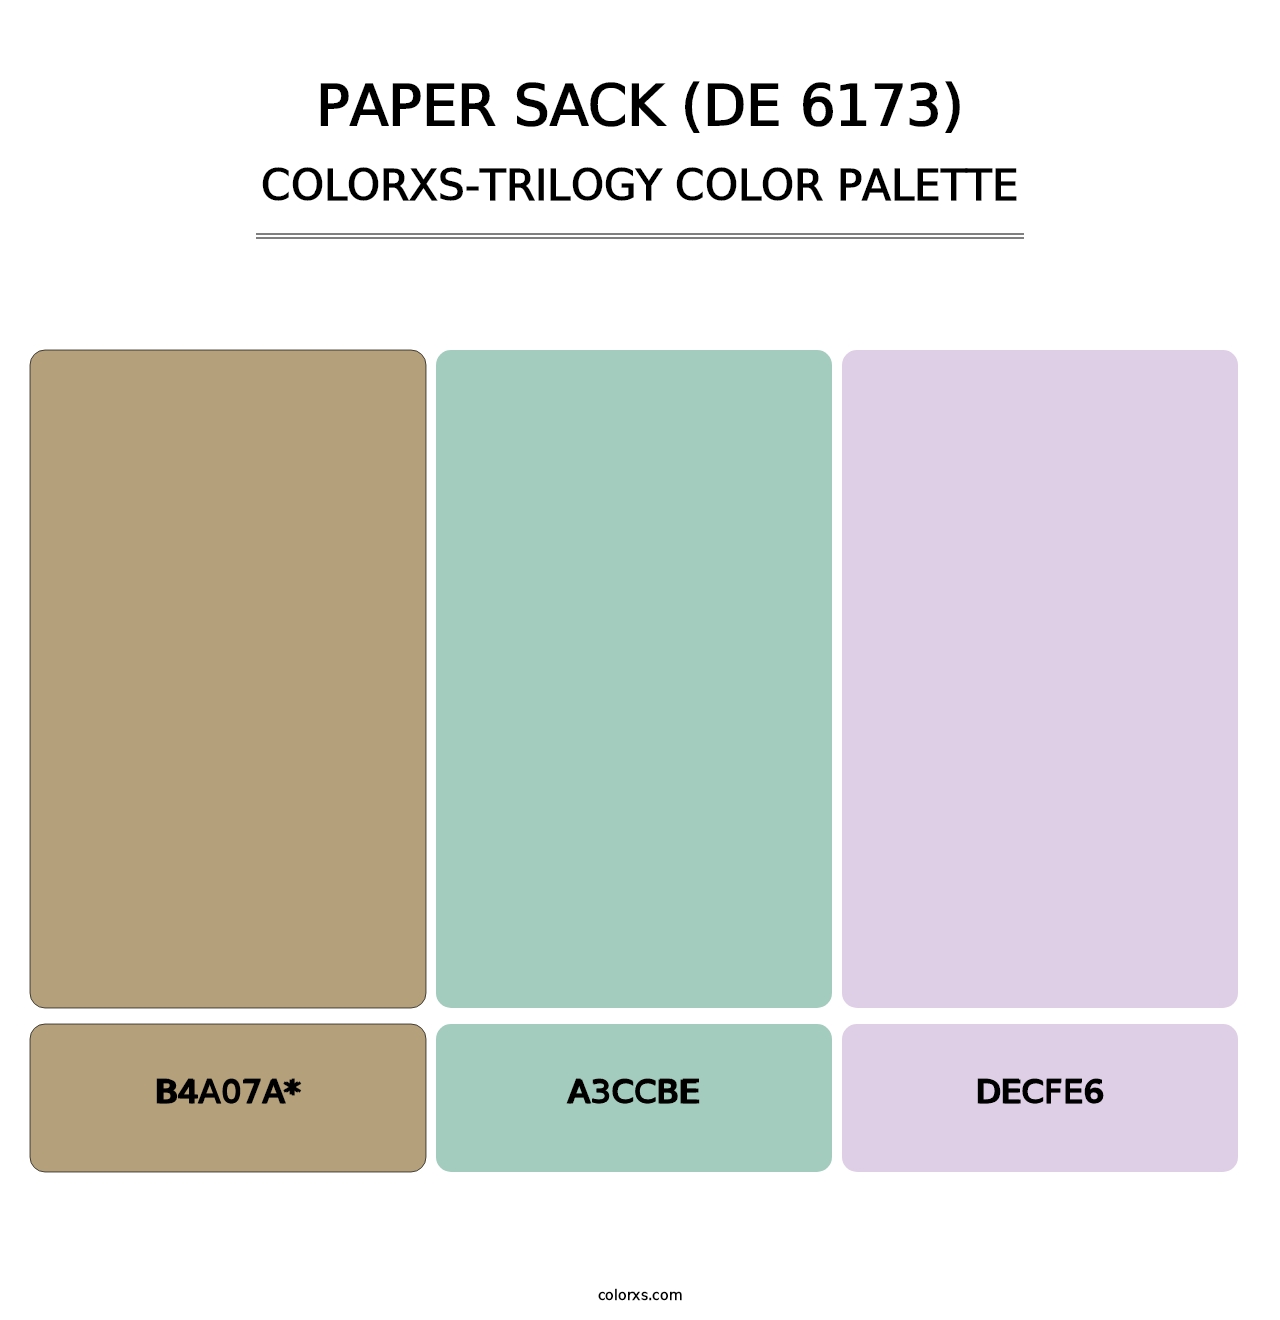 Paper Sack (DE 6173) - Colorxs Trilogy Palette